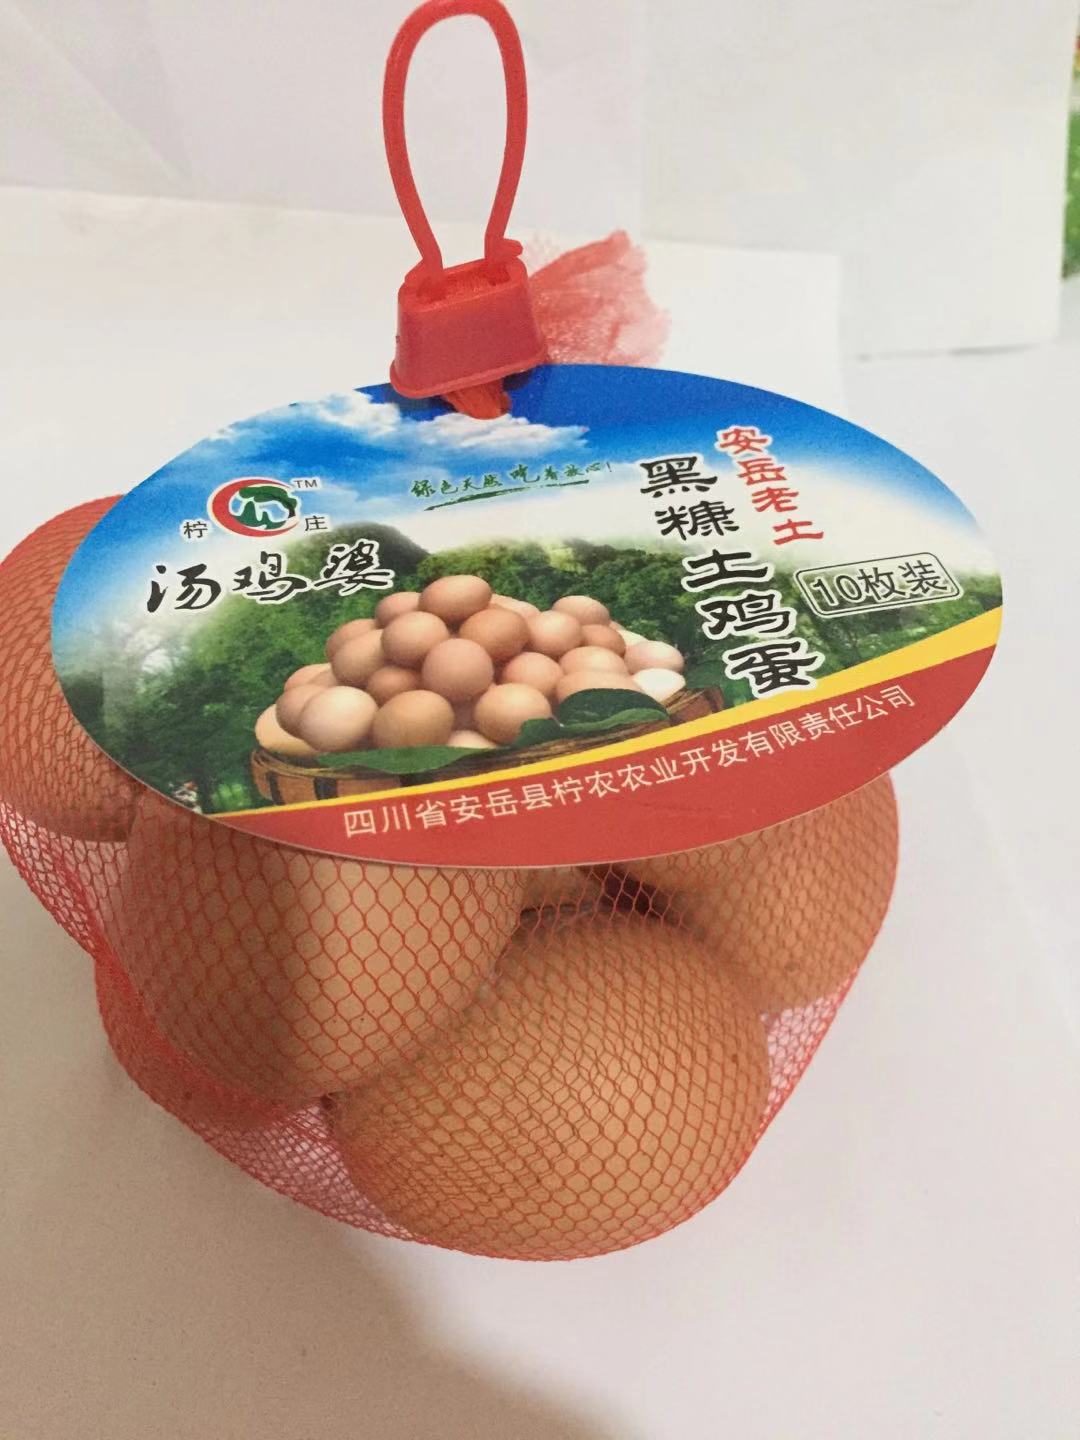 安岳鸡蛋收购_柠檬鸡蛋批发_安岳县柠农农业开发有限责任公司